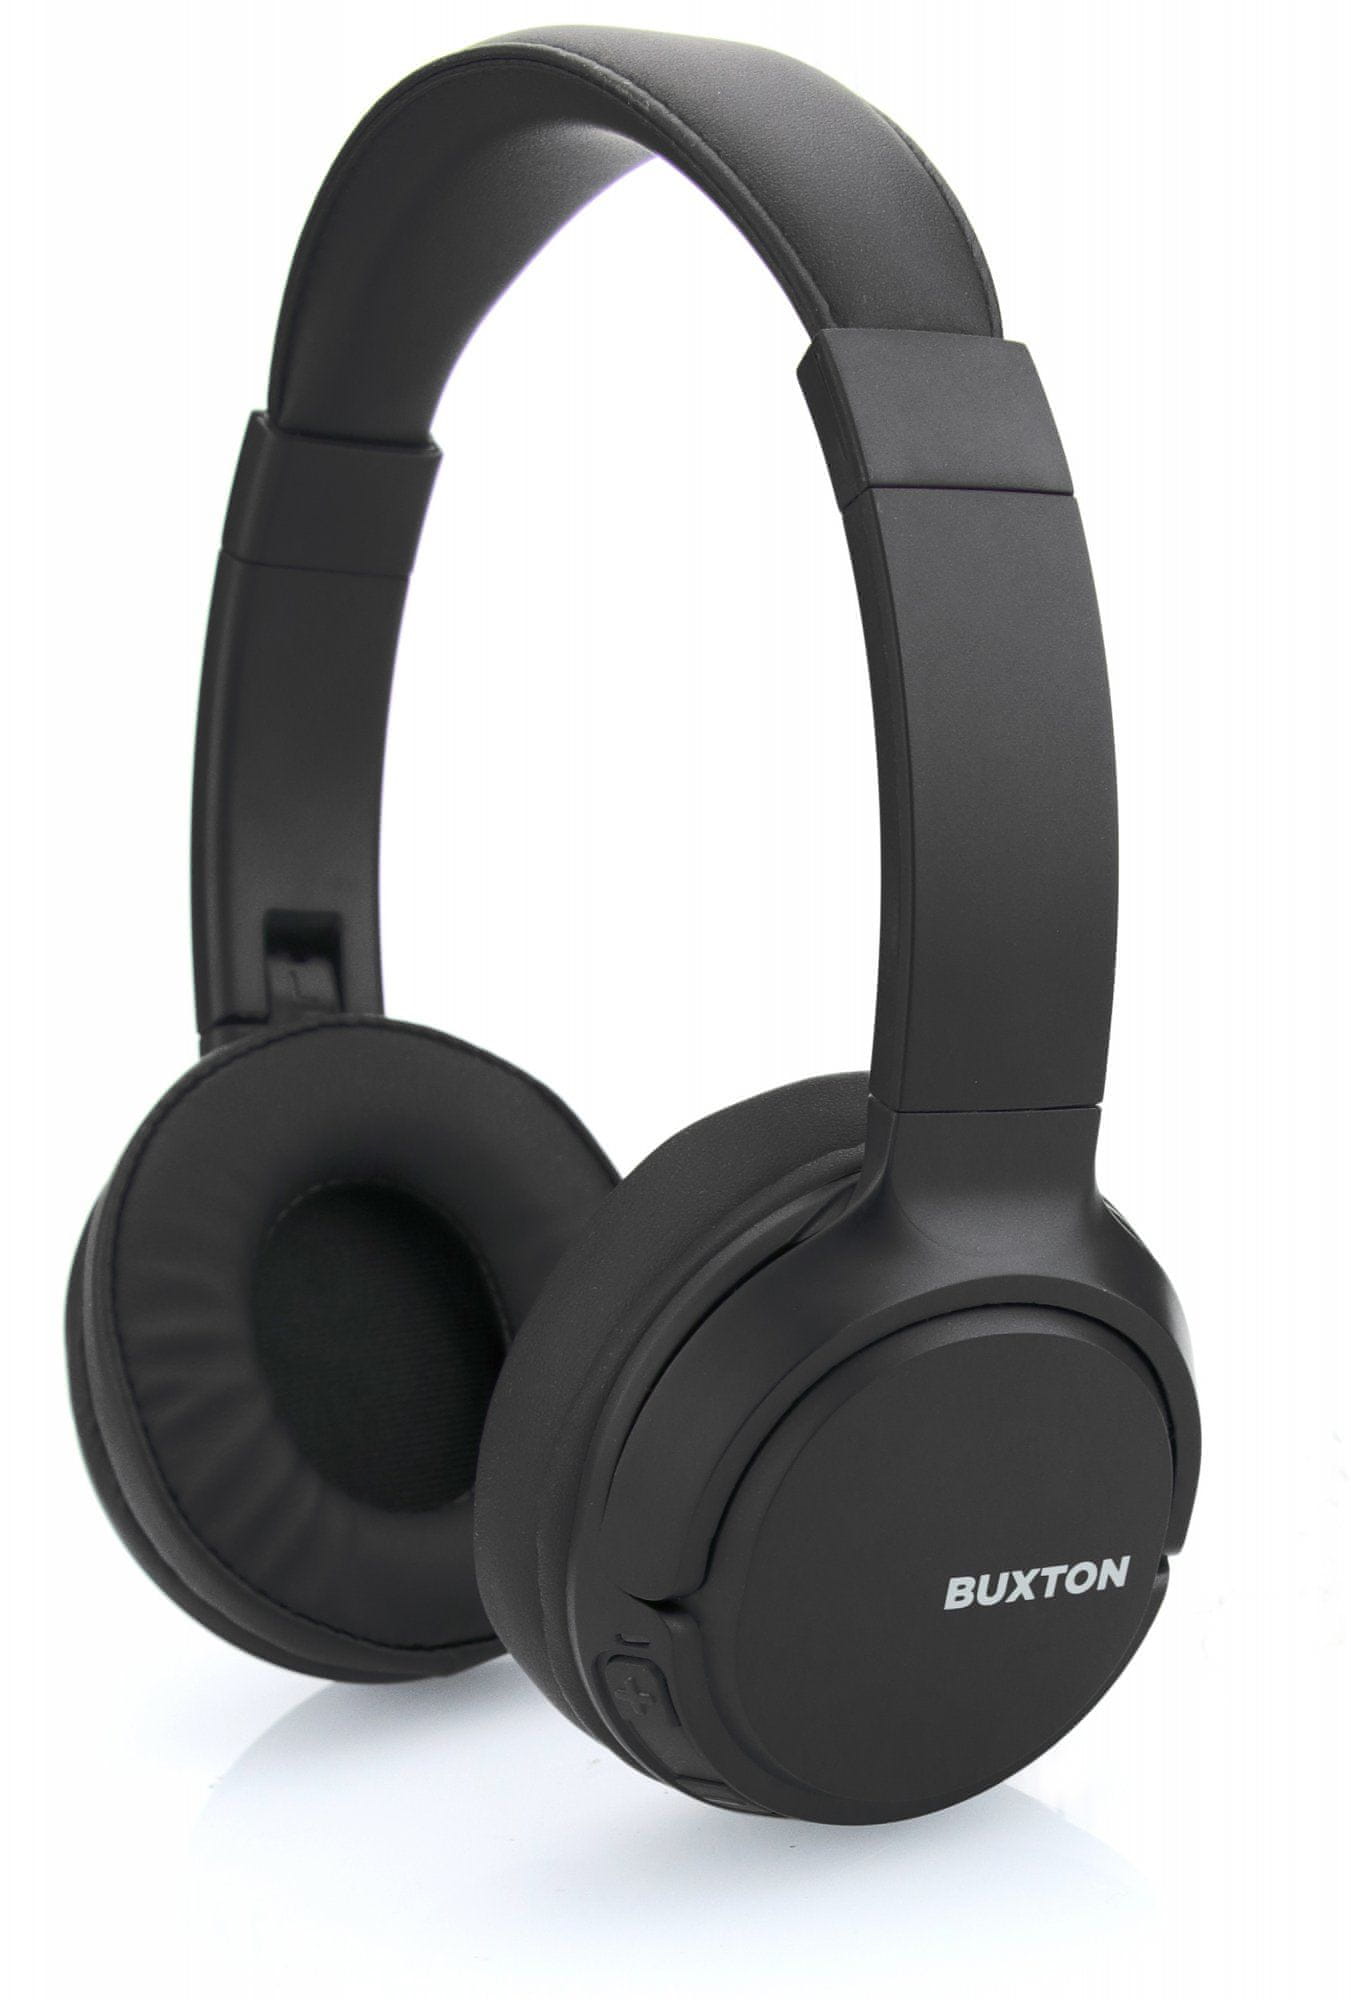  moderní bezdrátová Bluetooth technologie buxton bhp 7300 pohodlná lehounká sluchátka stavové led indikátory usb nabíjení dlouhá výdrž 